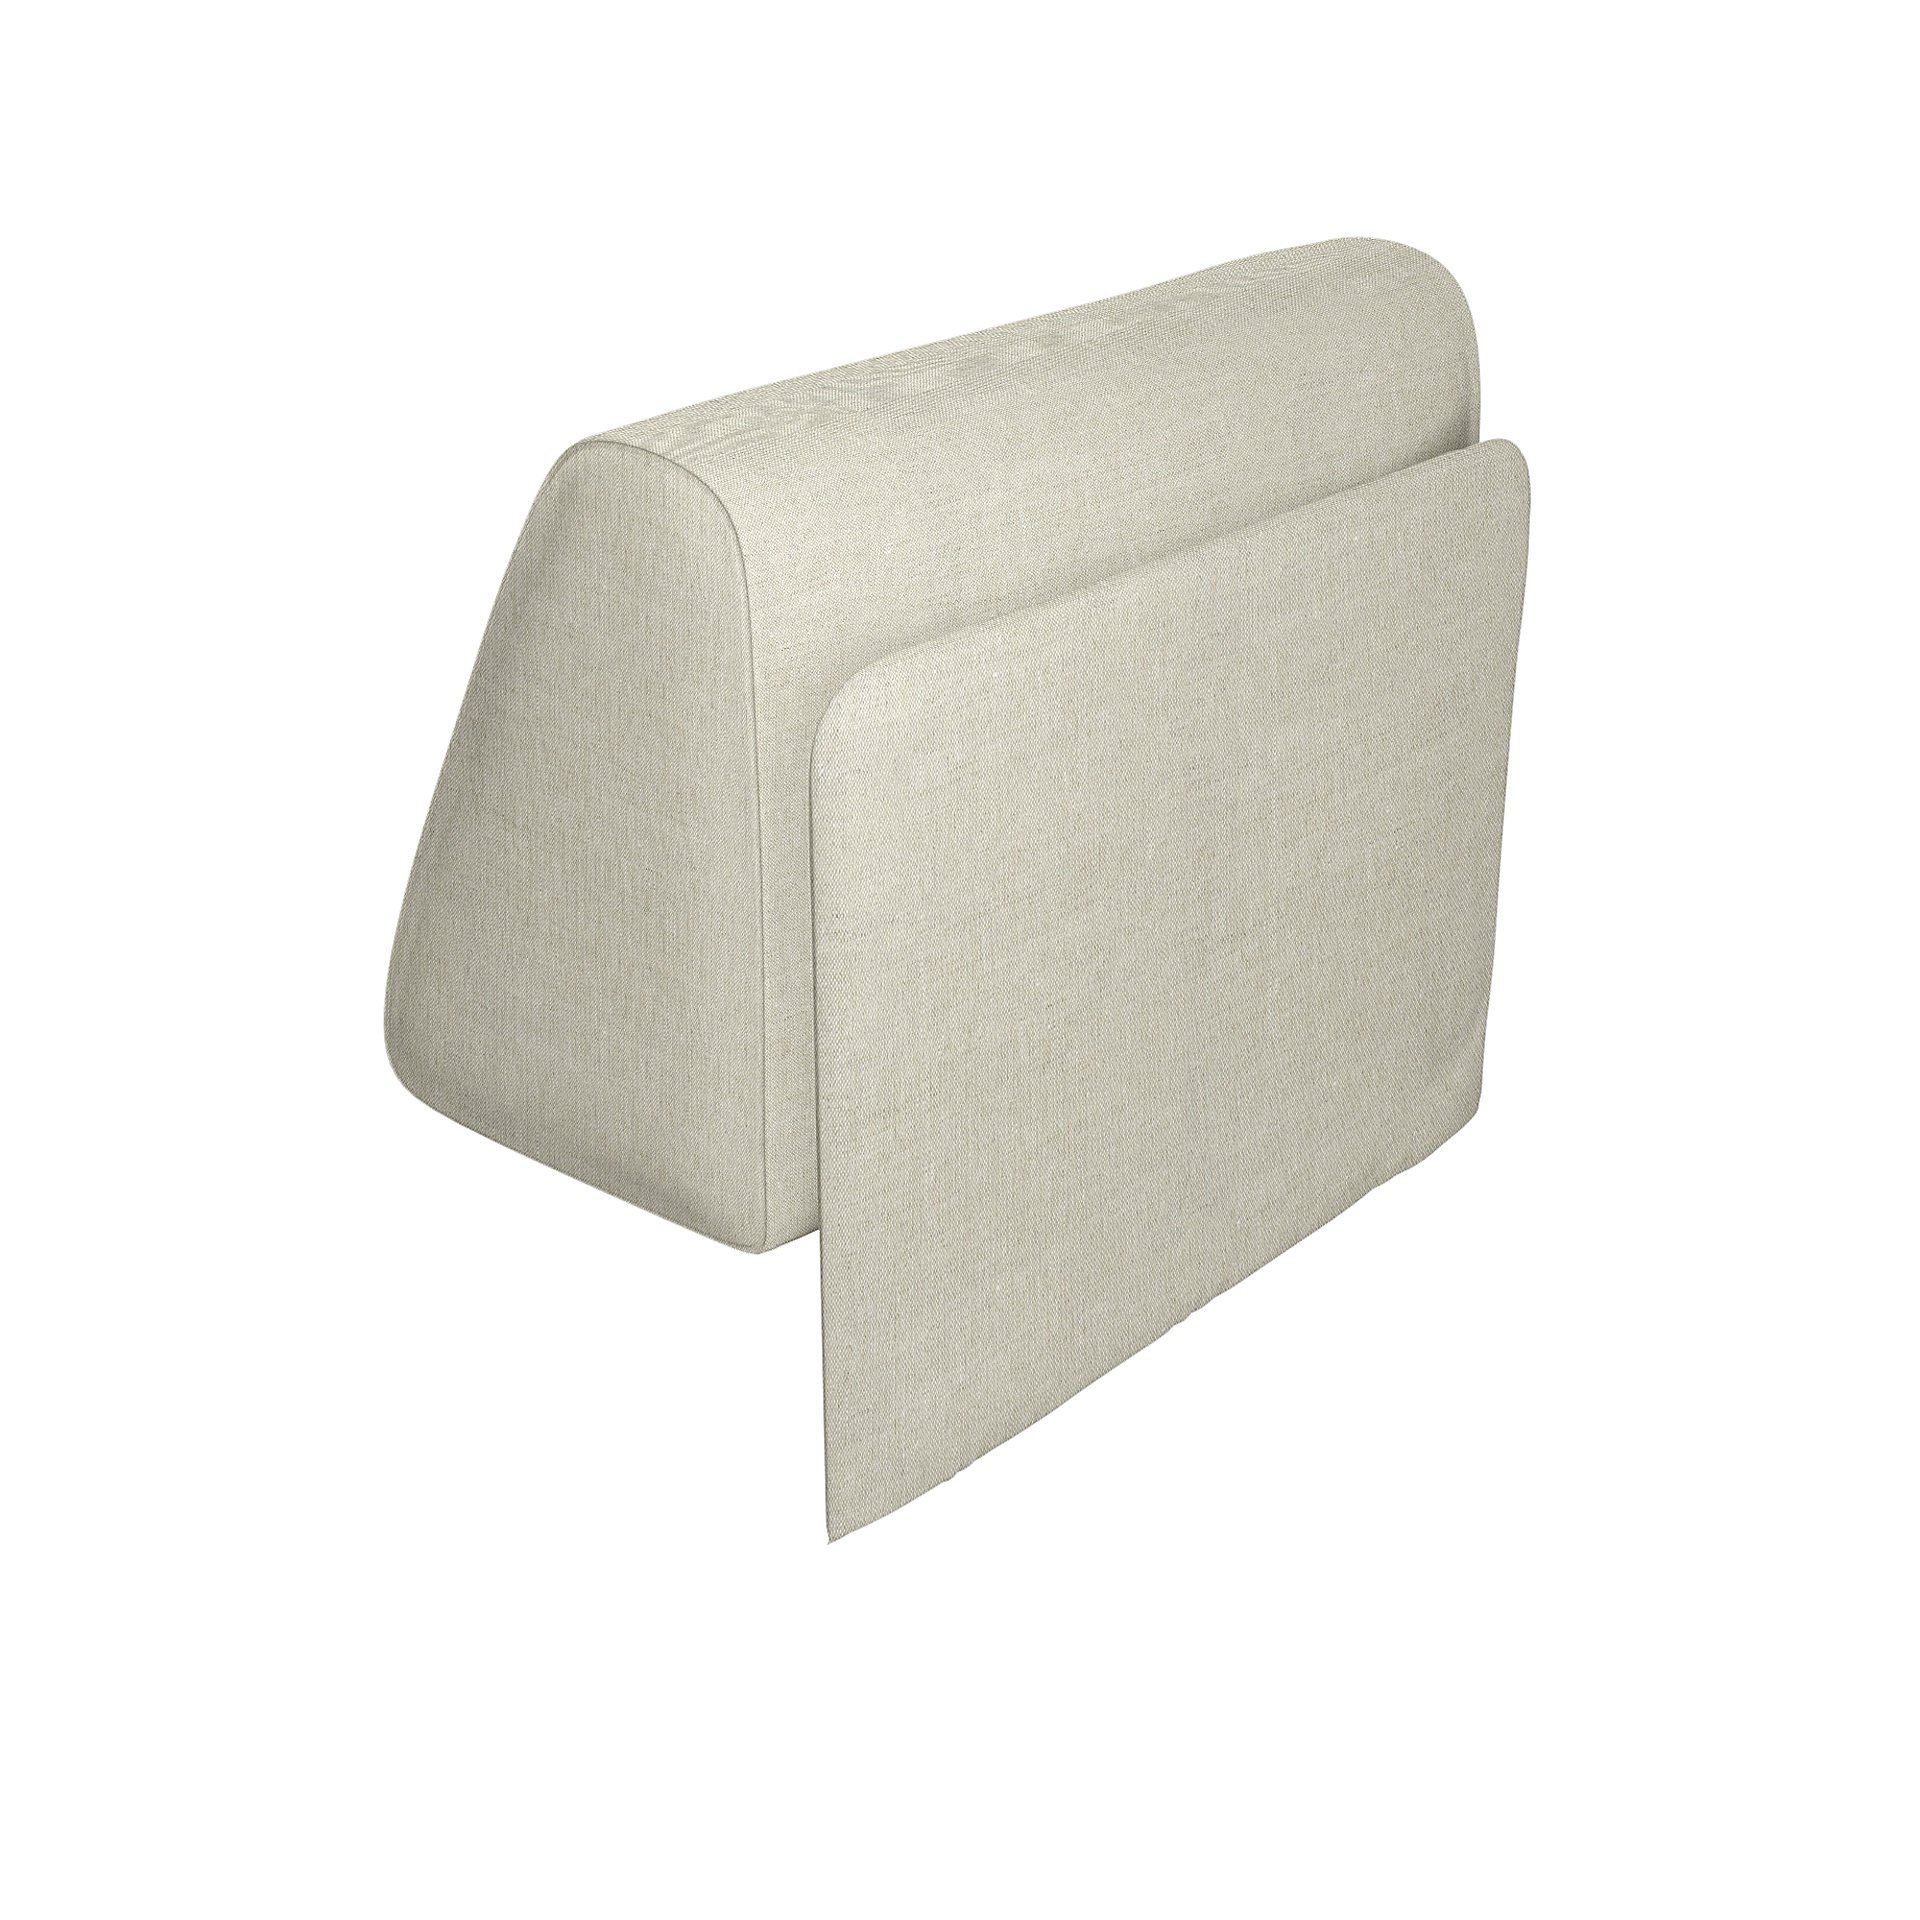 IKEA - Delaktig Backrest with Cushion Cover, Natural, Linen - Bemz